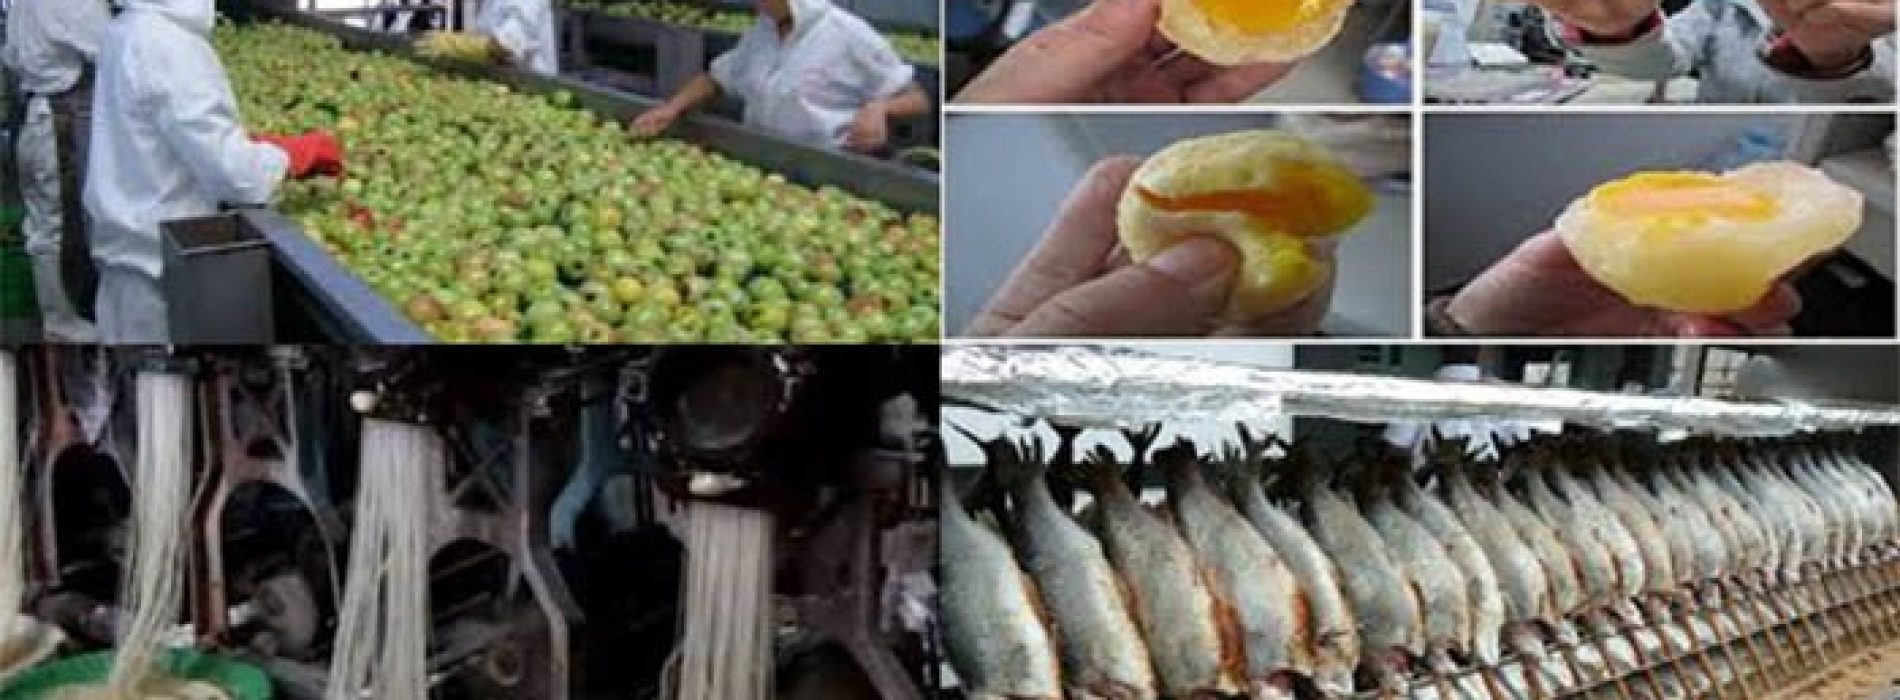 10 voedingsproducten ( Made in China), die vol zitten met b.v. plastic, Pesticiden en kankerverwekkende stoffen.